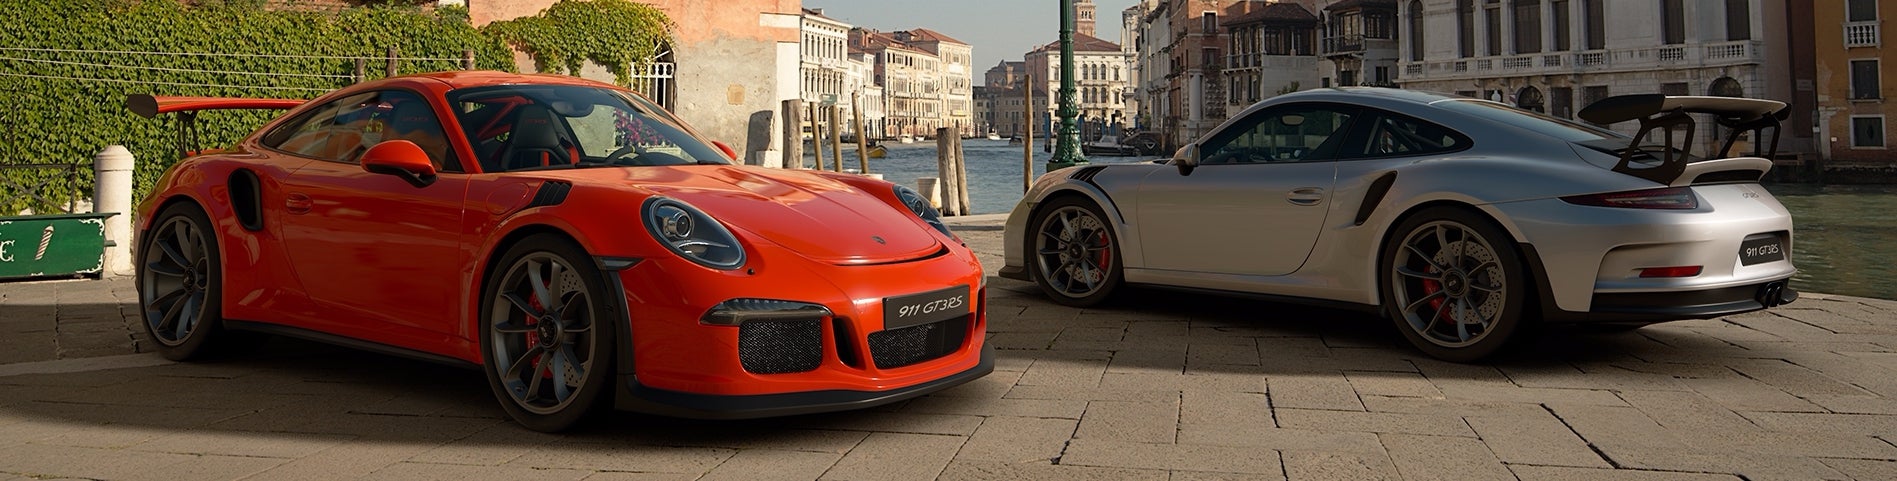 Imagem para Digital Foundry: Análise à Tecnologia - Gran Turismo Sport vs Forza Motorsport 7